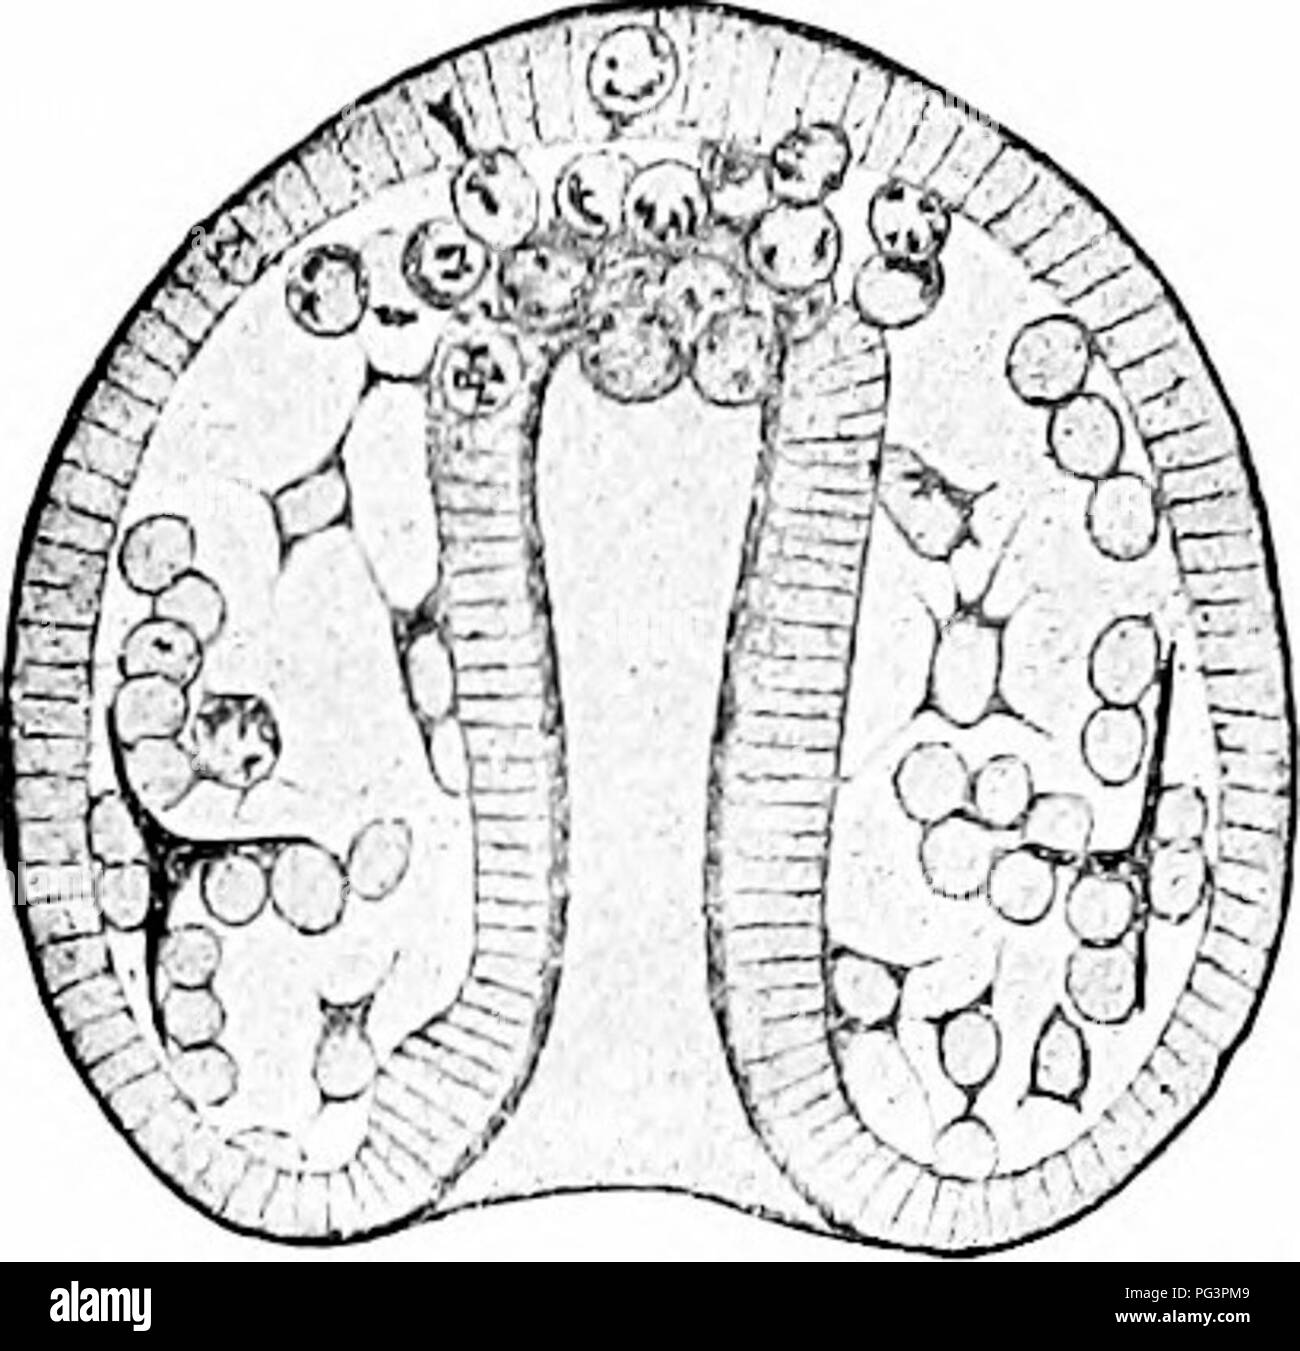 . Ein Handbuch der Zoologie. Zoologie. Abb. io 8.- Larvse von Strongylocenirotus lividus (nach Boveri). Links ein blaslula witli Mesenchym Bildung; rechts ein Gastrula-stadium mit differenzierten Mesenchym. entoderm Ijy die Sekretion von gallertartige Substanz erweitert wird, und aus dem entoderm isolierten Zellen in diesem Gelee; somit ergibt sich eine mittlere Schicht, die mesenchym (Abb. io 8), ein wenig ähnlich gallertige Bindegewebe, aus denen bestimmte Organe ganz oder teilweise ihren Ursprung nehmen. Das mesenchym kann vor Beginn der gastrulation oder nach diesem Prozess hat complet. Stockfoto